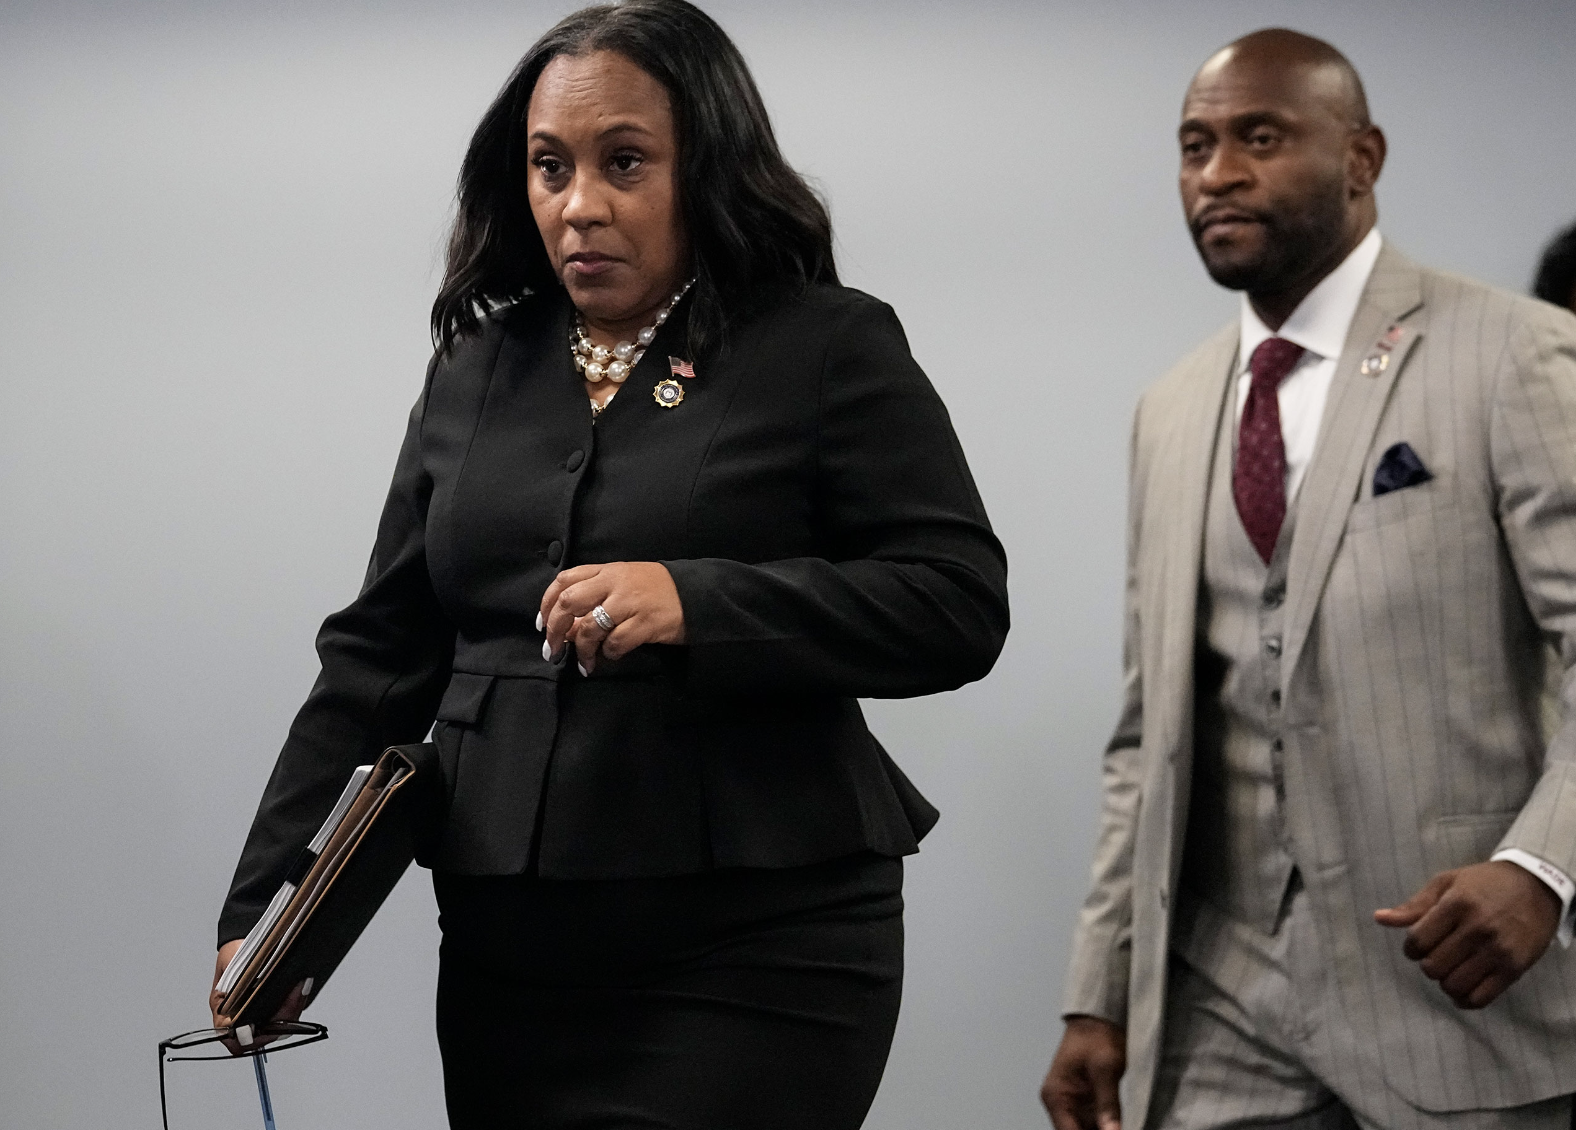 Công tố viên quận Fulton Fani Willis (trái) khi đến dự một cuộc họp báo tại Trung tâm Chính quyền Quận Fulton ở Atlanta hôm 14-8. Ảnh: AP